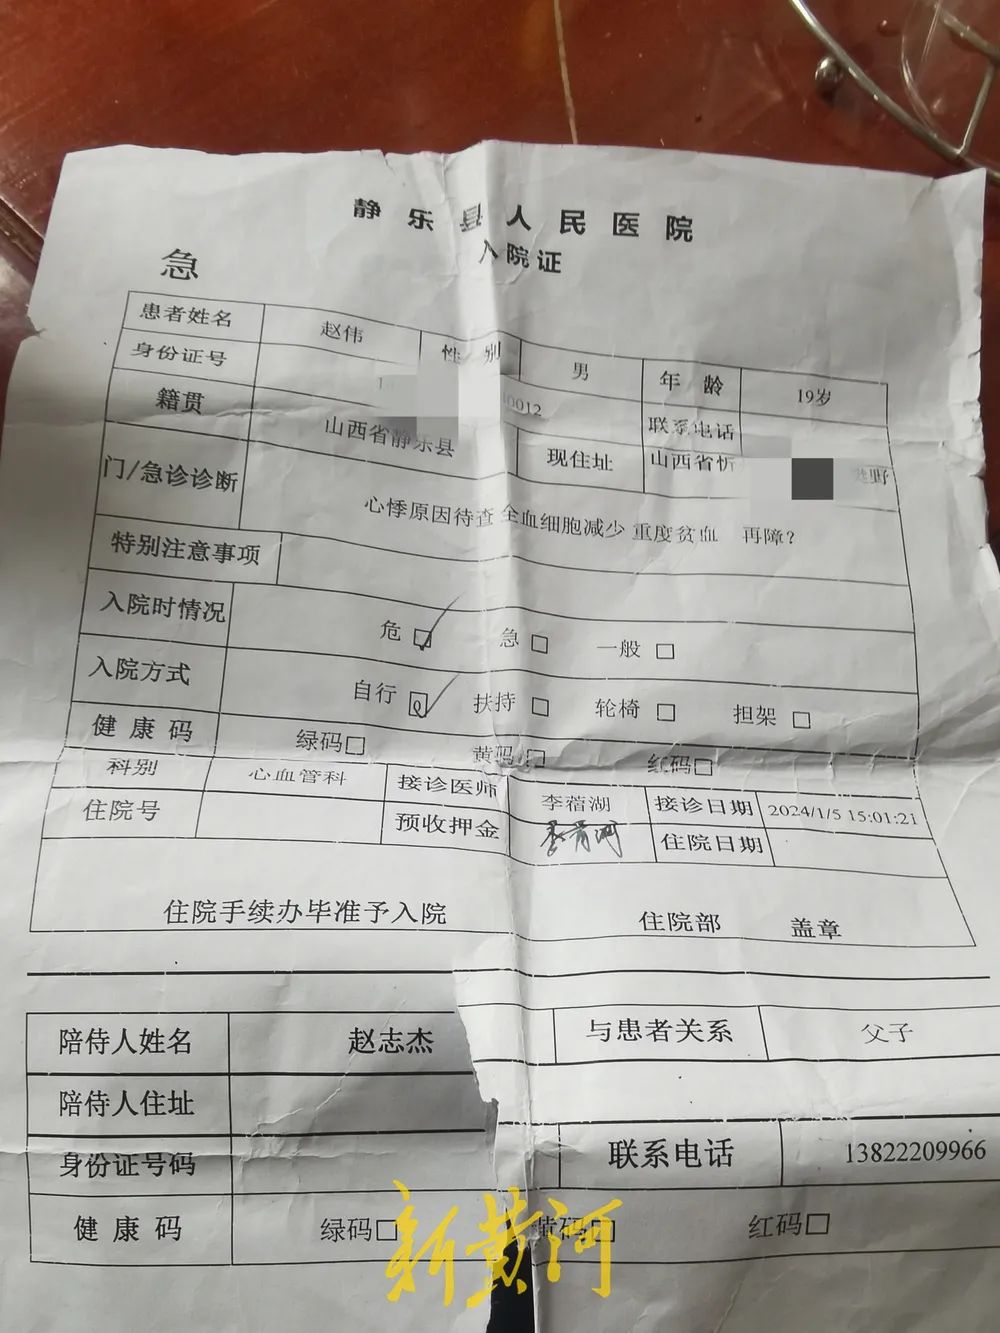 日,赵伟曾到静乐县人民医院就医,诊断显示:患者全血细胞减少,重度贫血